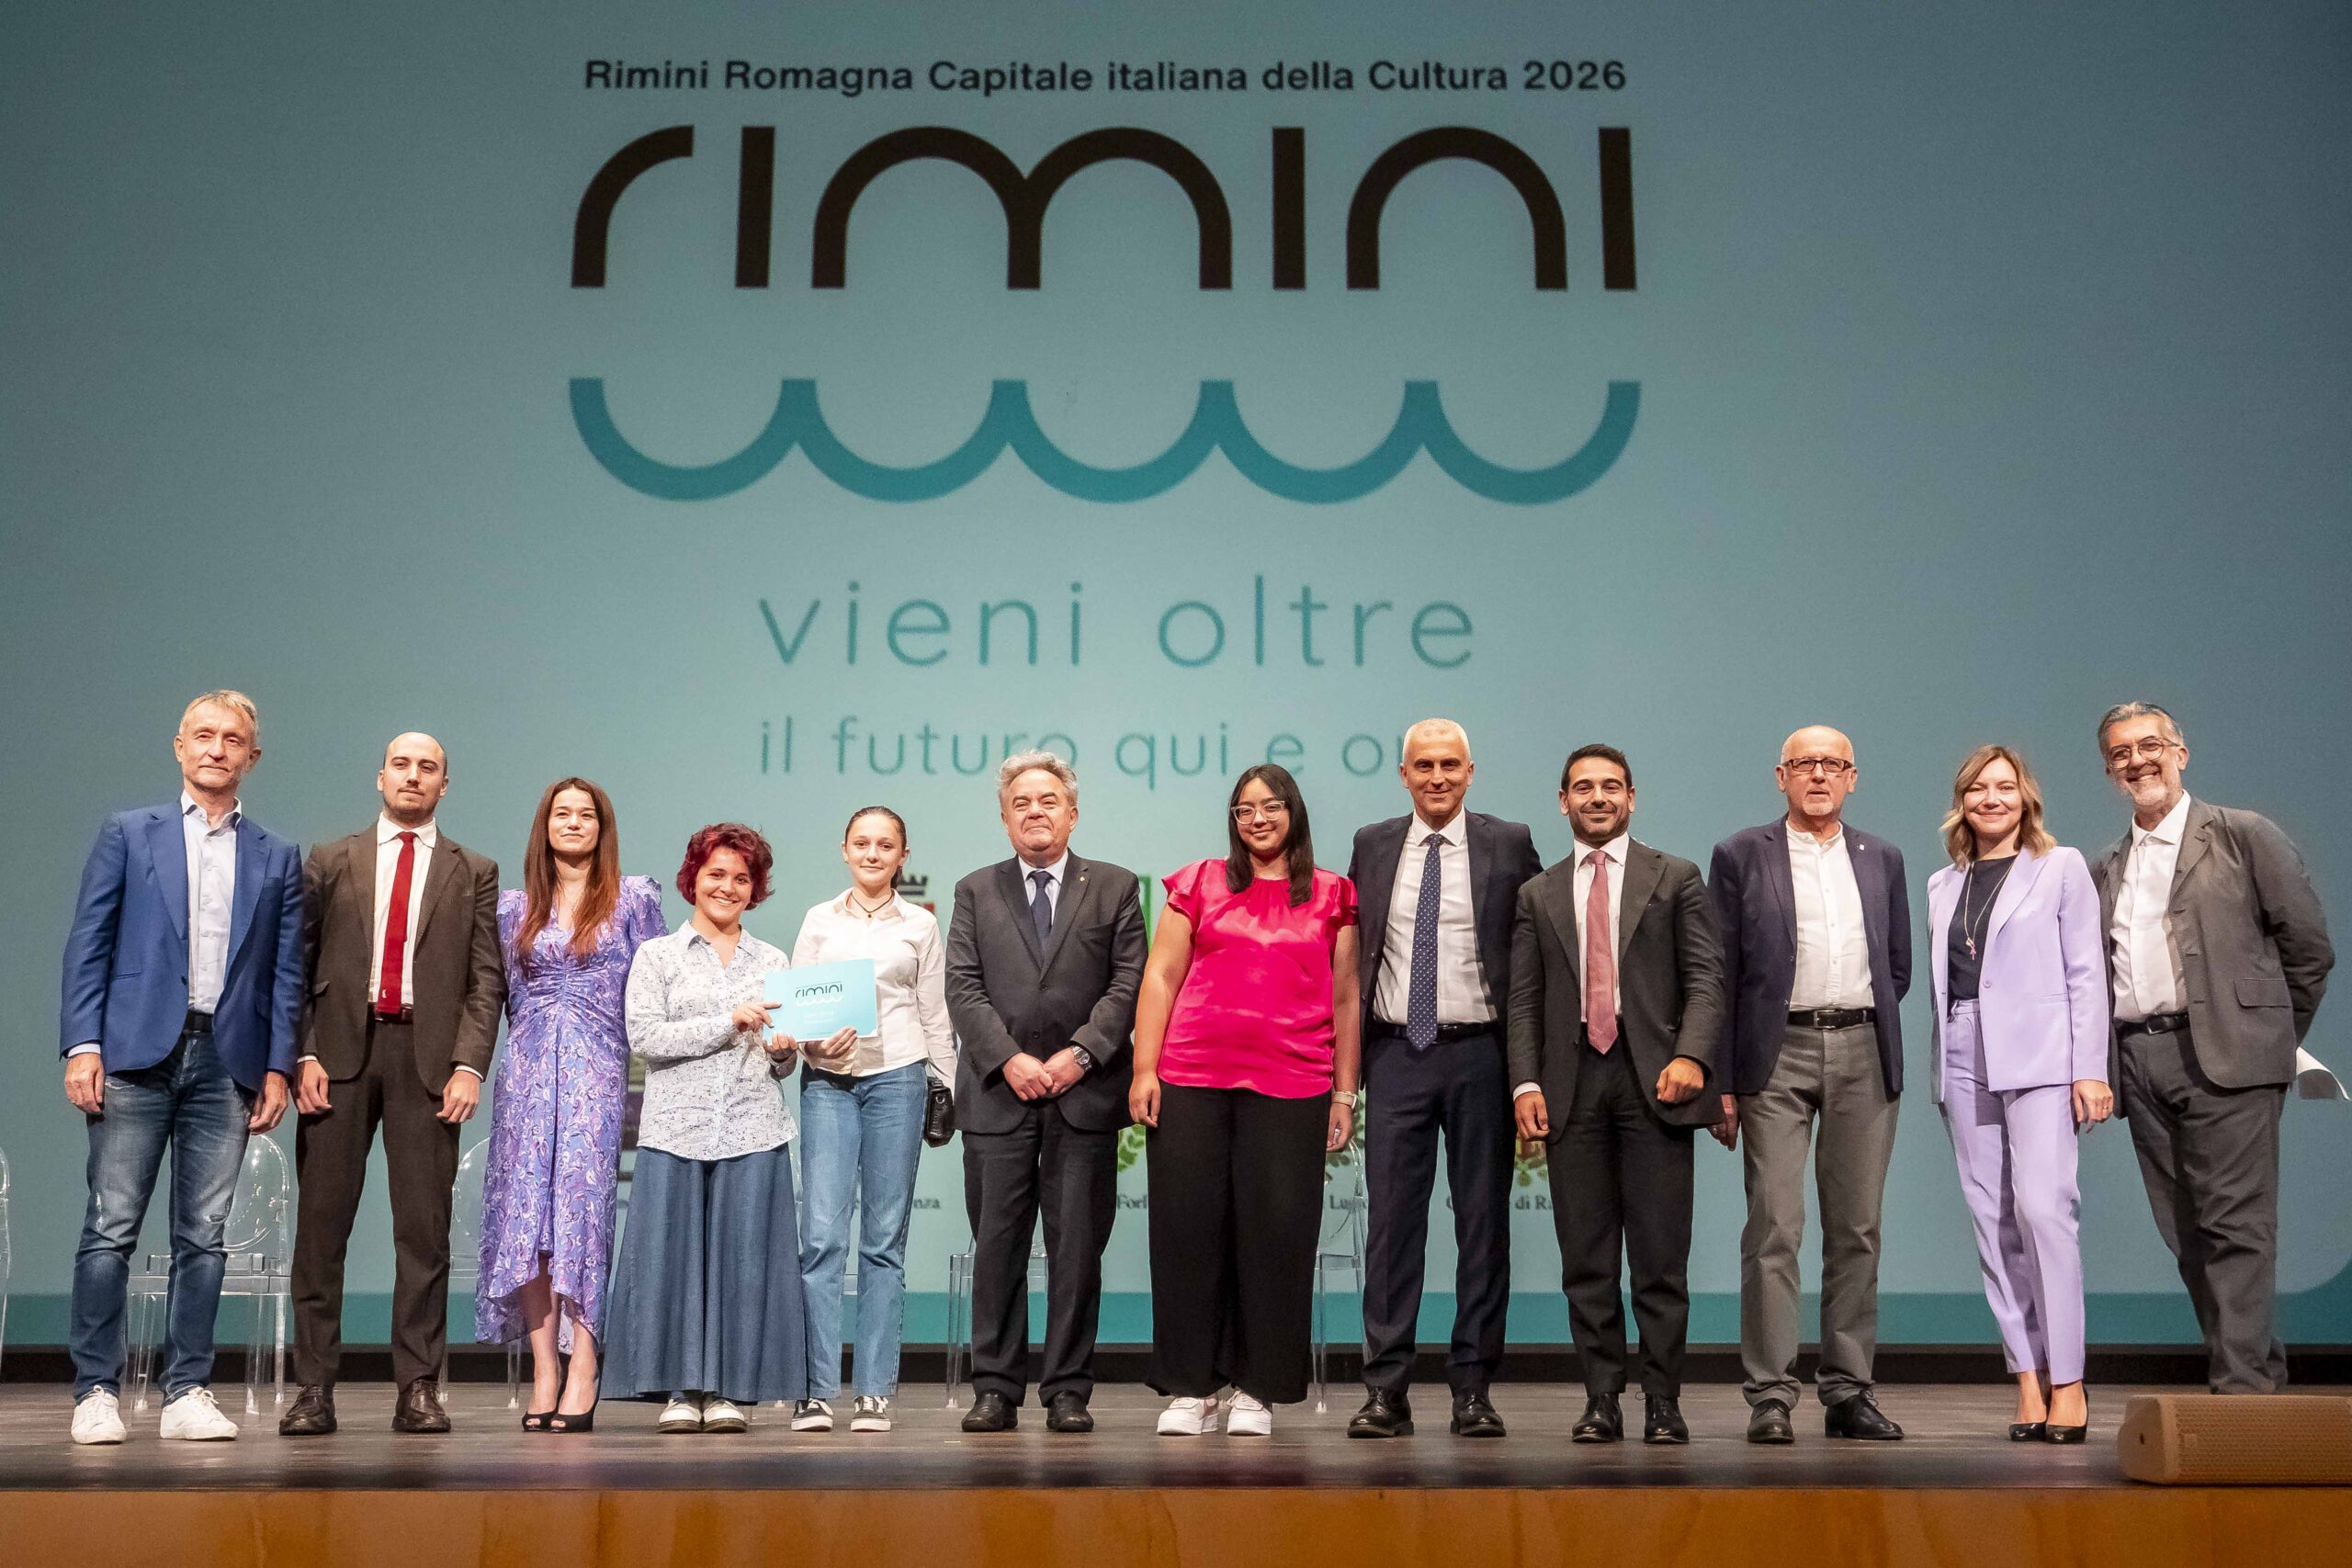 Rimini con la Romagna candidata a capitale cultura 2026: un Teatro gremito per il lancio del dossier, in migliaia nelle piazze per la festa tra musica e musei aperti.